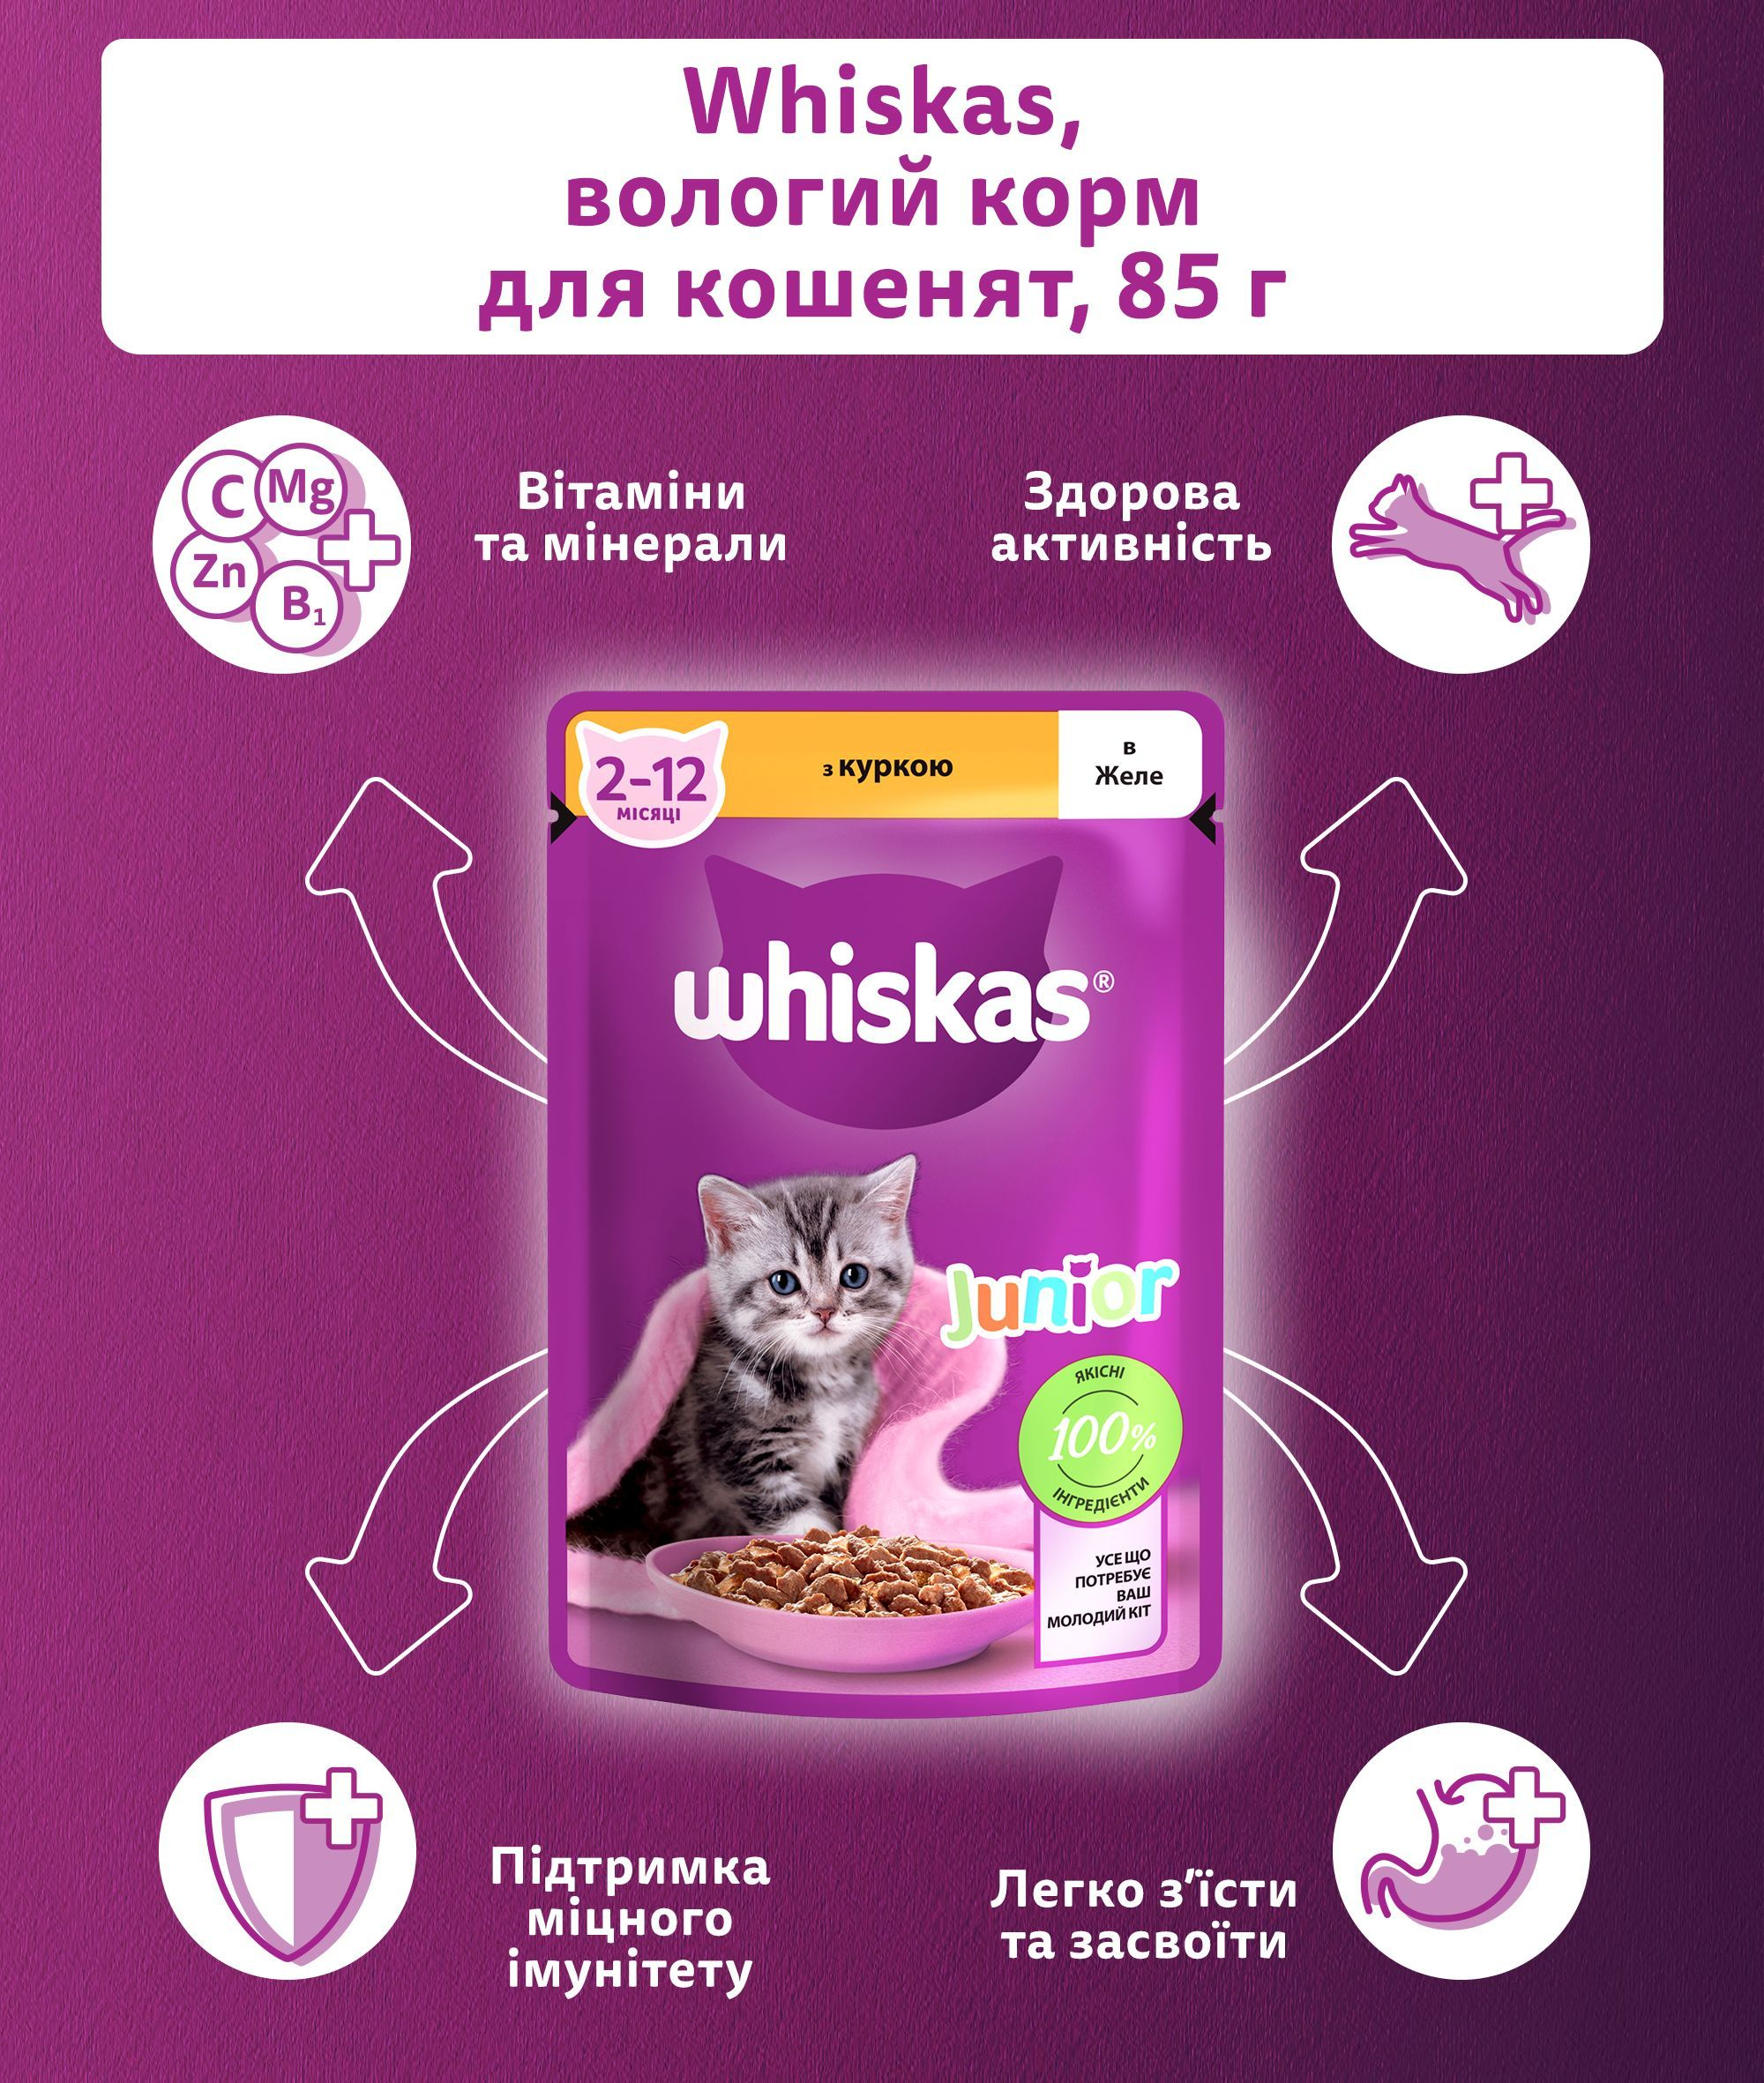 Вологий корм для кошенят Whiskas з куркою в желе 85гфото4